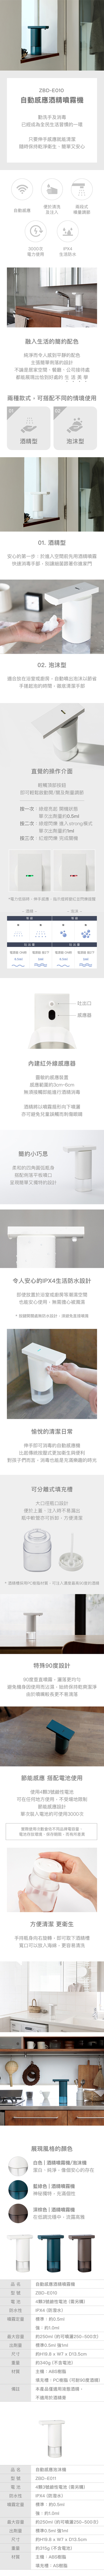 【免費禮品包裝】ZBD-E010自動感應酒精噴霧機